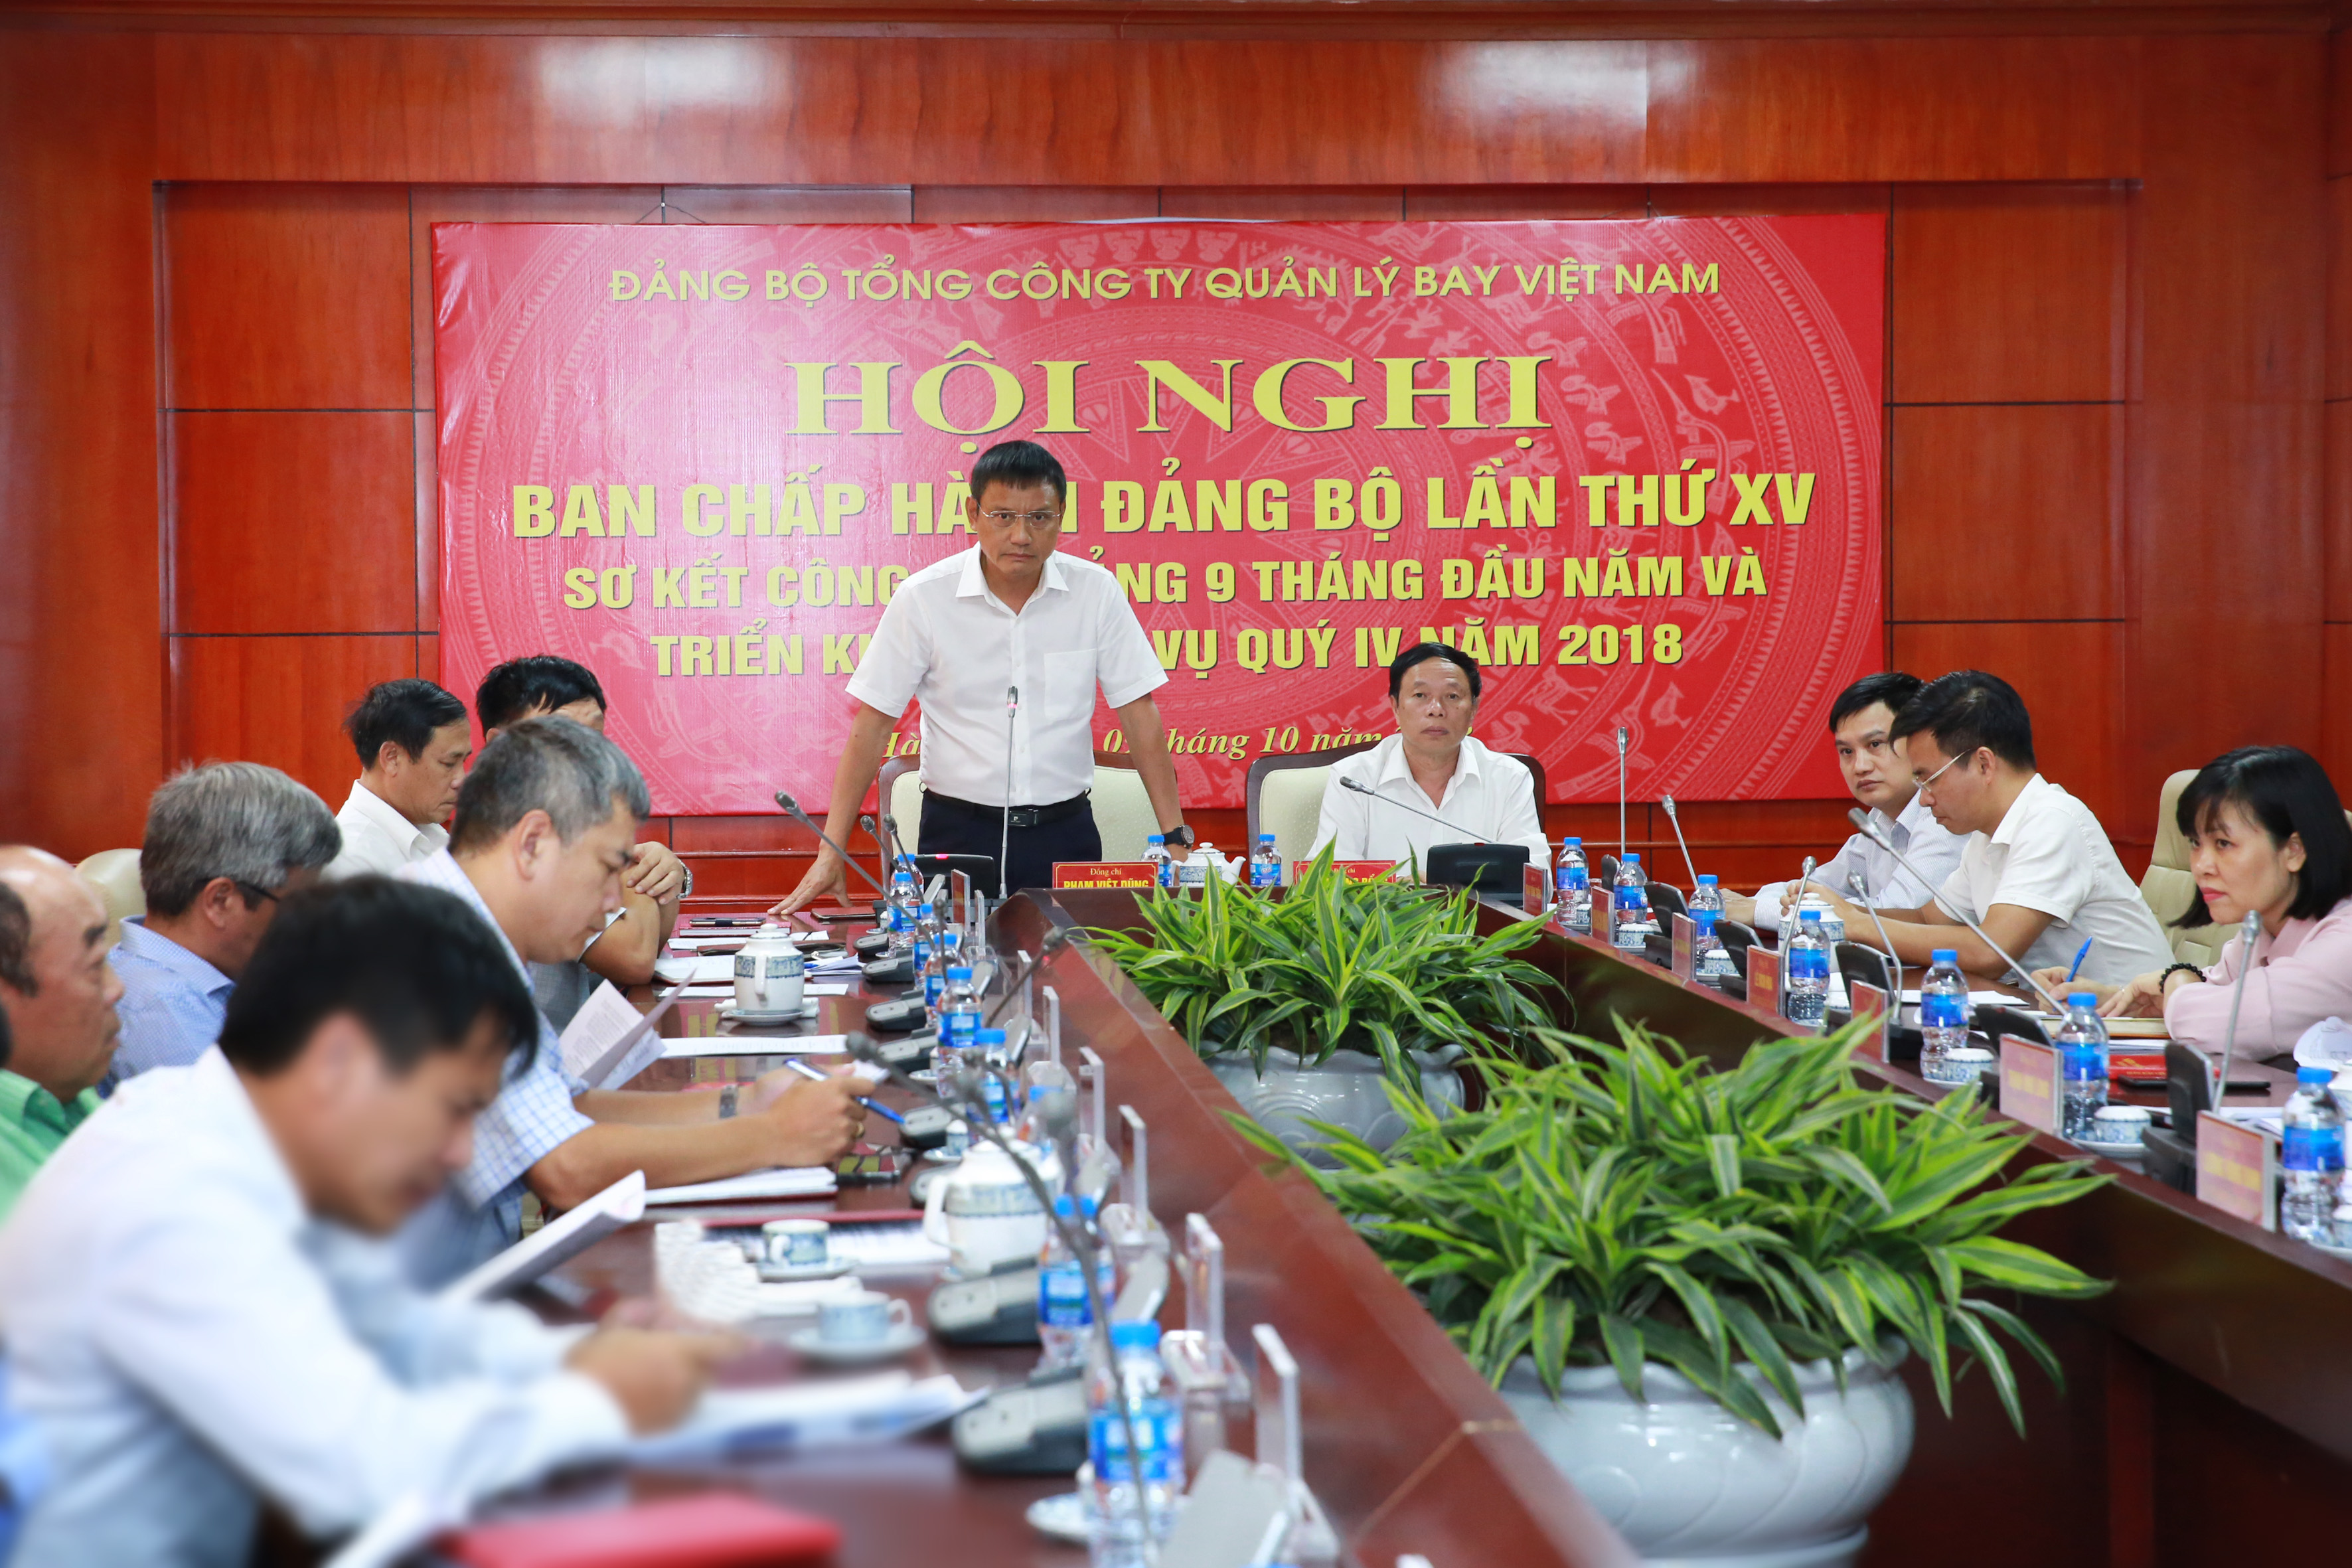 Hội nghị Ban Chấp hành Đảng bộ Tổng công ty Quản lý bay Việt Nam lần thứ XV sơ kết công tác 9 tháng và phương hướng nhiệm vụ quý IV năm 2018